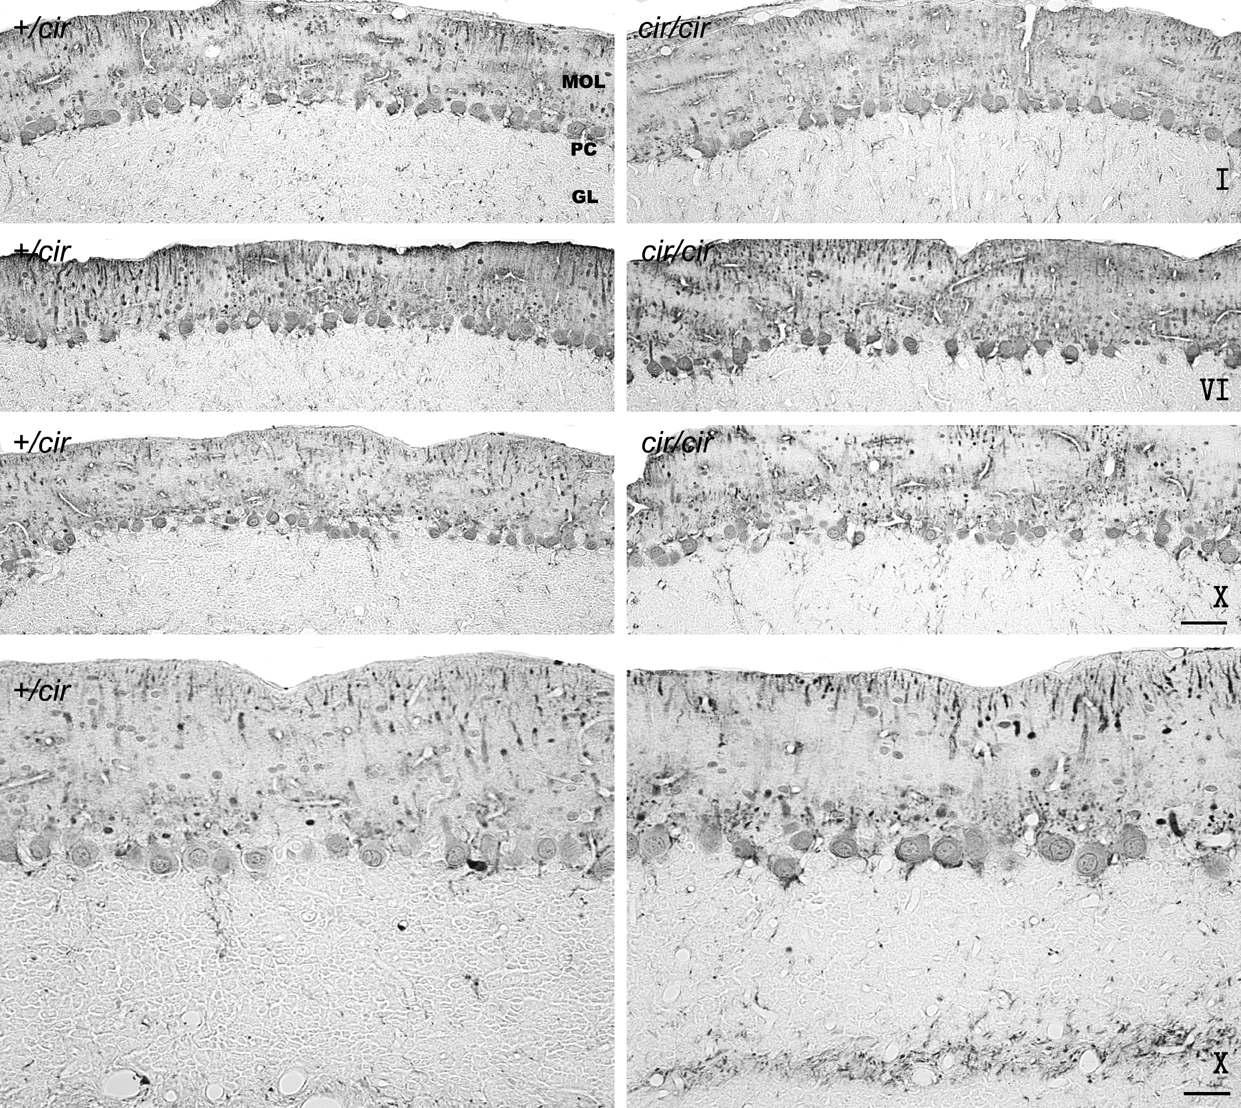 소뇌 lobule 관상단면 (I, VI 및 X번 소엽) Parvalbumin 면역염색사진.